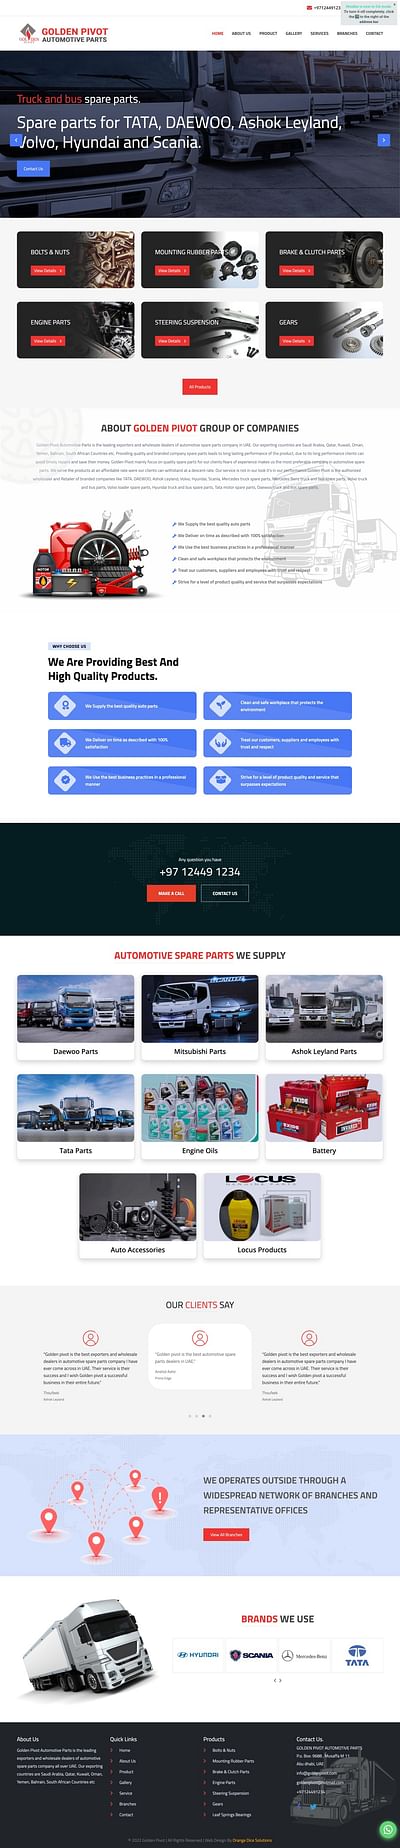 Website designed for Goldenpivot automobile - Aplicación Web